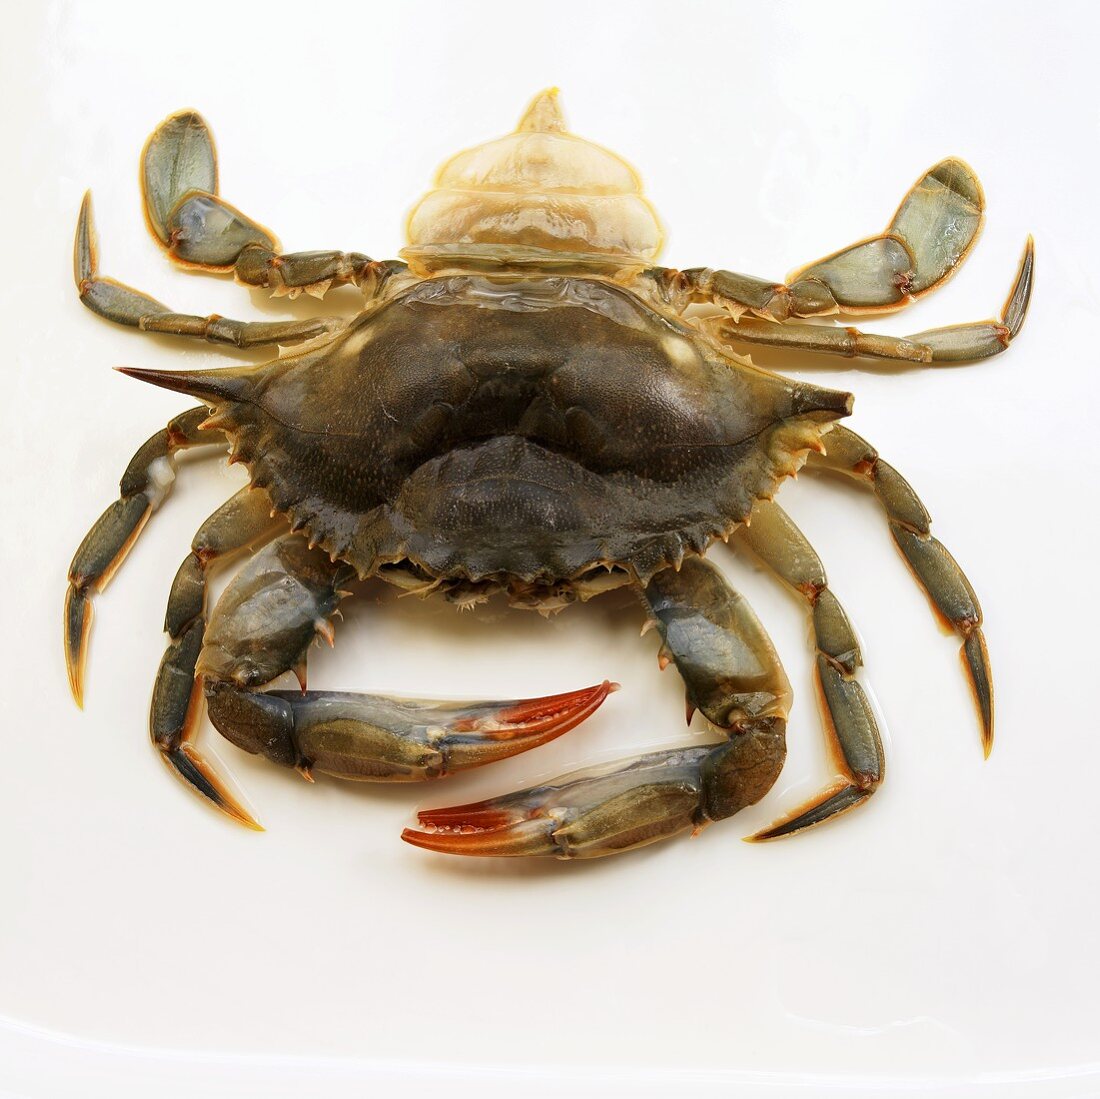 Soft Shell Crab (Butterkrebs)